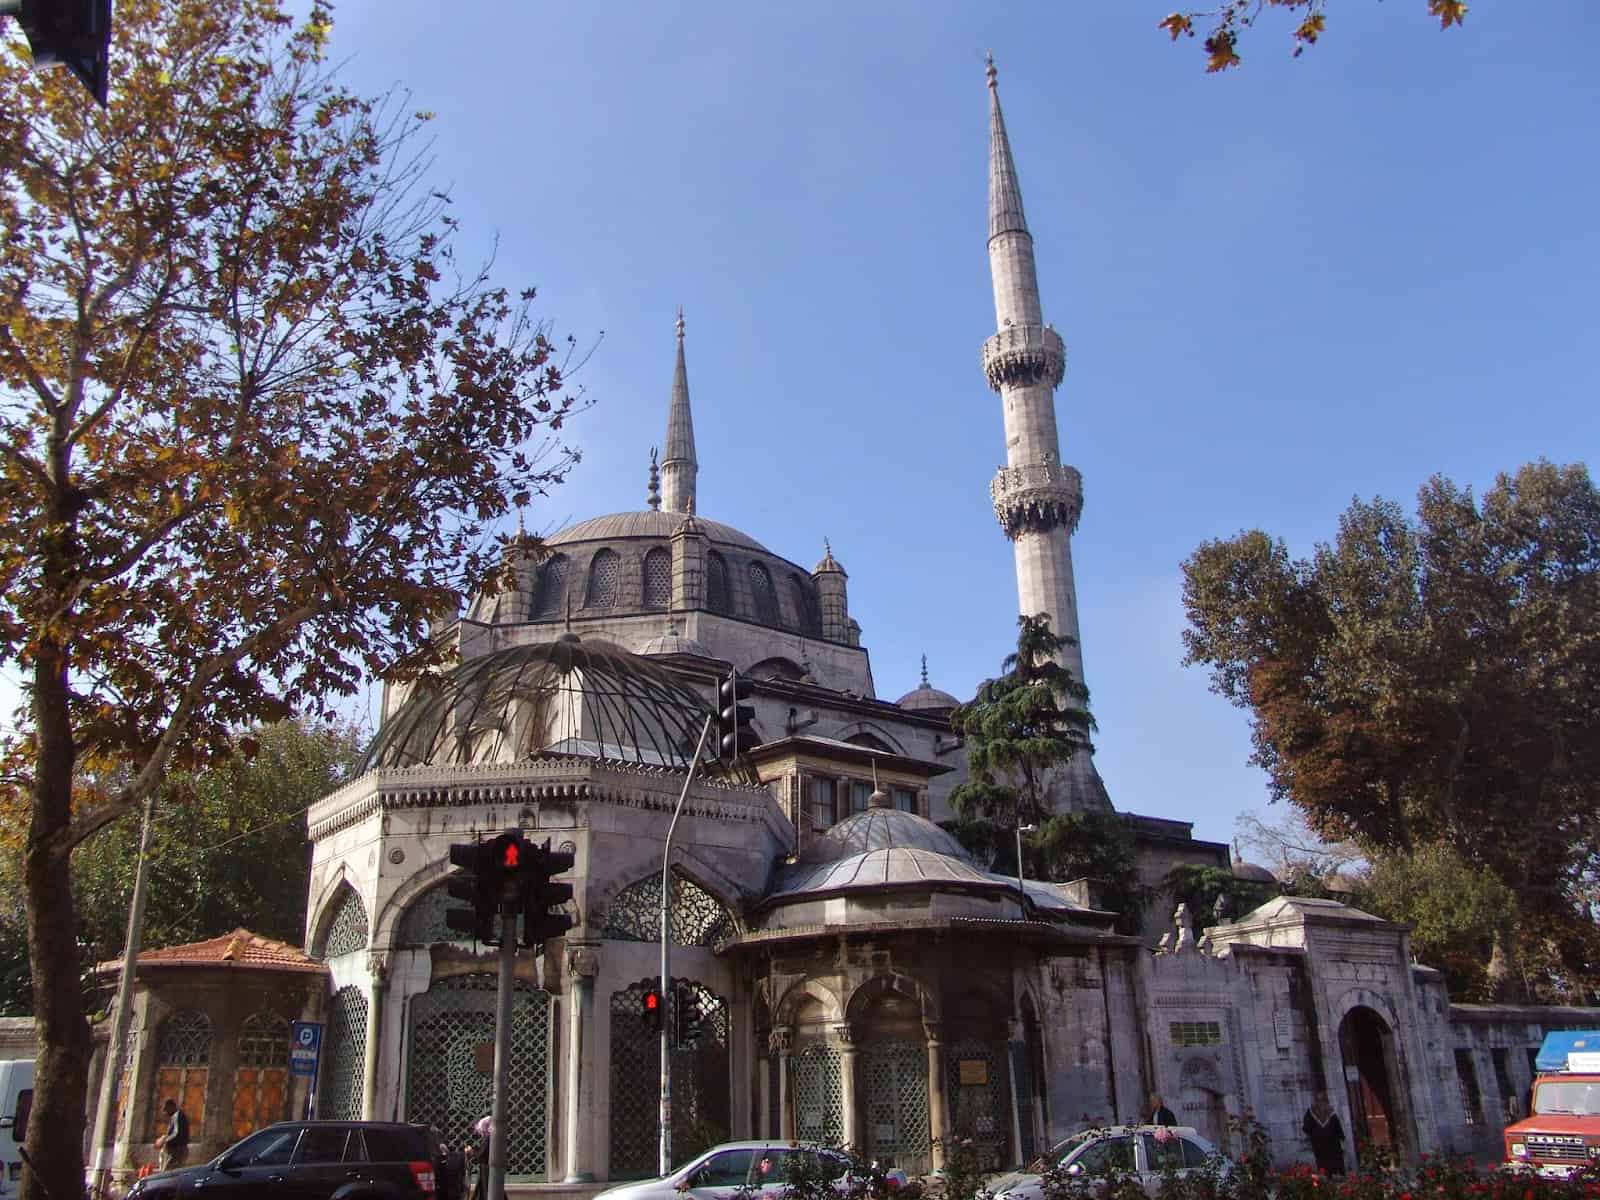 Yeni Valide Mosque in Üsküdar, Istanbul, Turkey